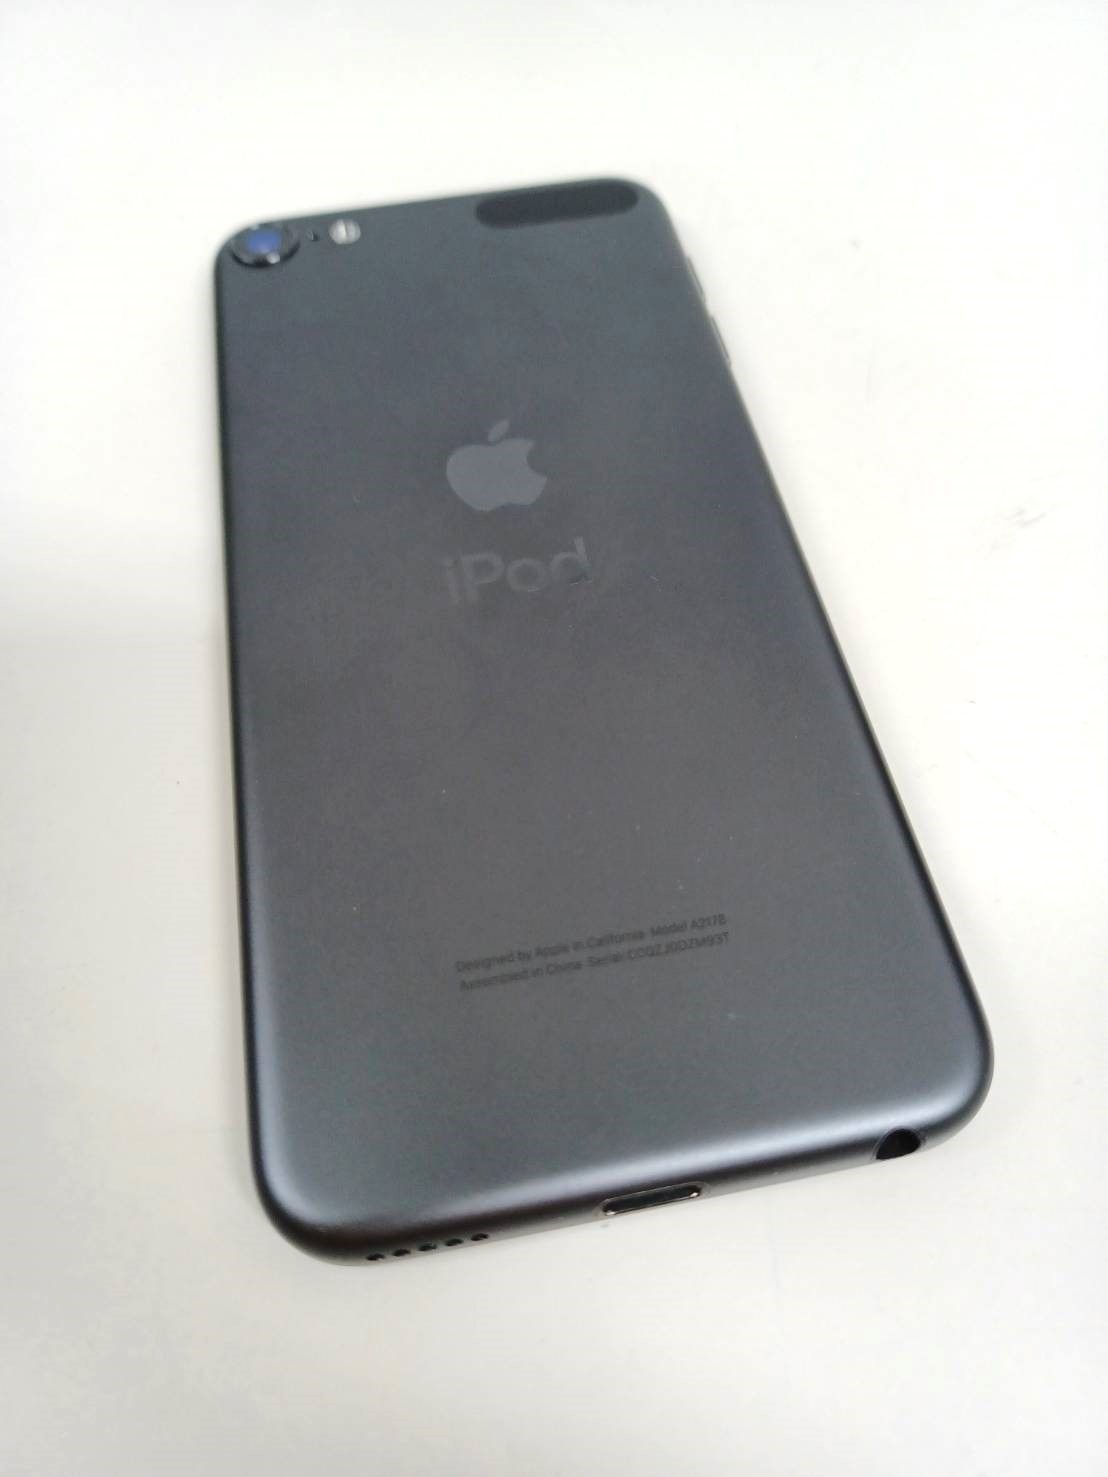 iPod touch 第7世代 MVJE2J/A (A2178) 256GB スペースグレイ - メルカリ